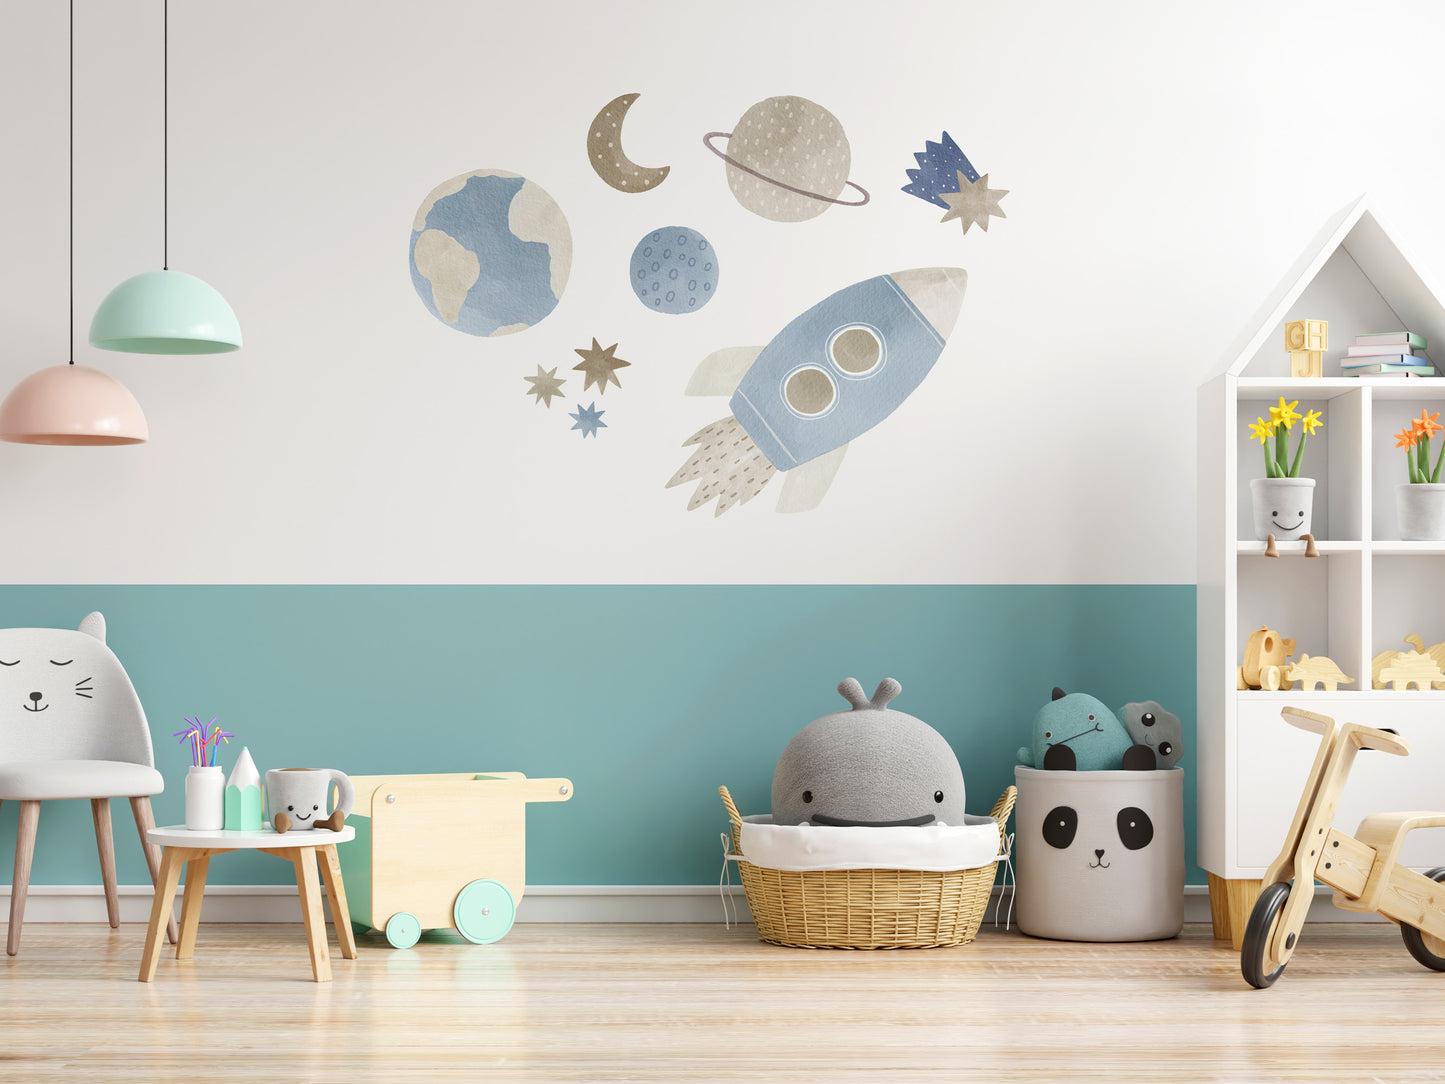 und Mural Walls – Rakete, Planeten Sterne Weltraum: (Wandsticker/Wandtattoo)